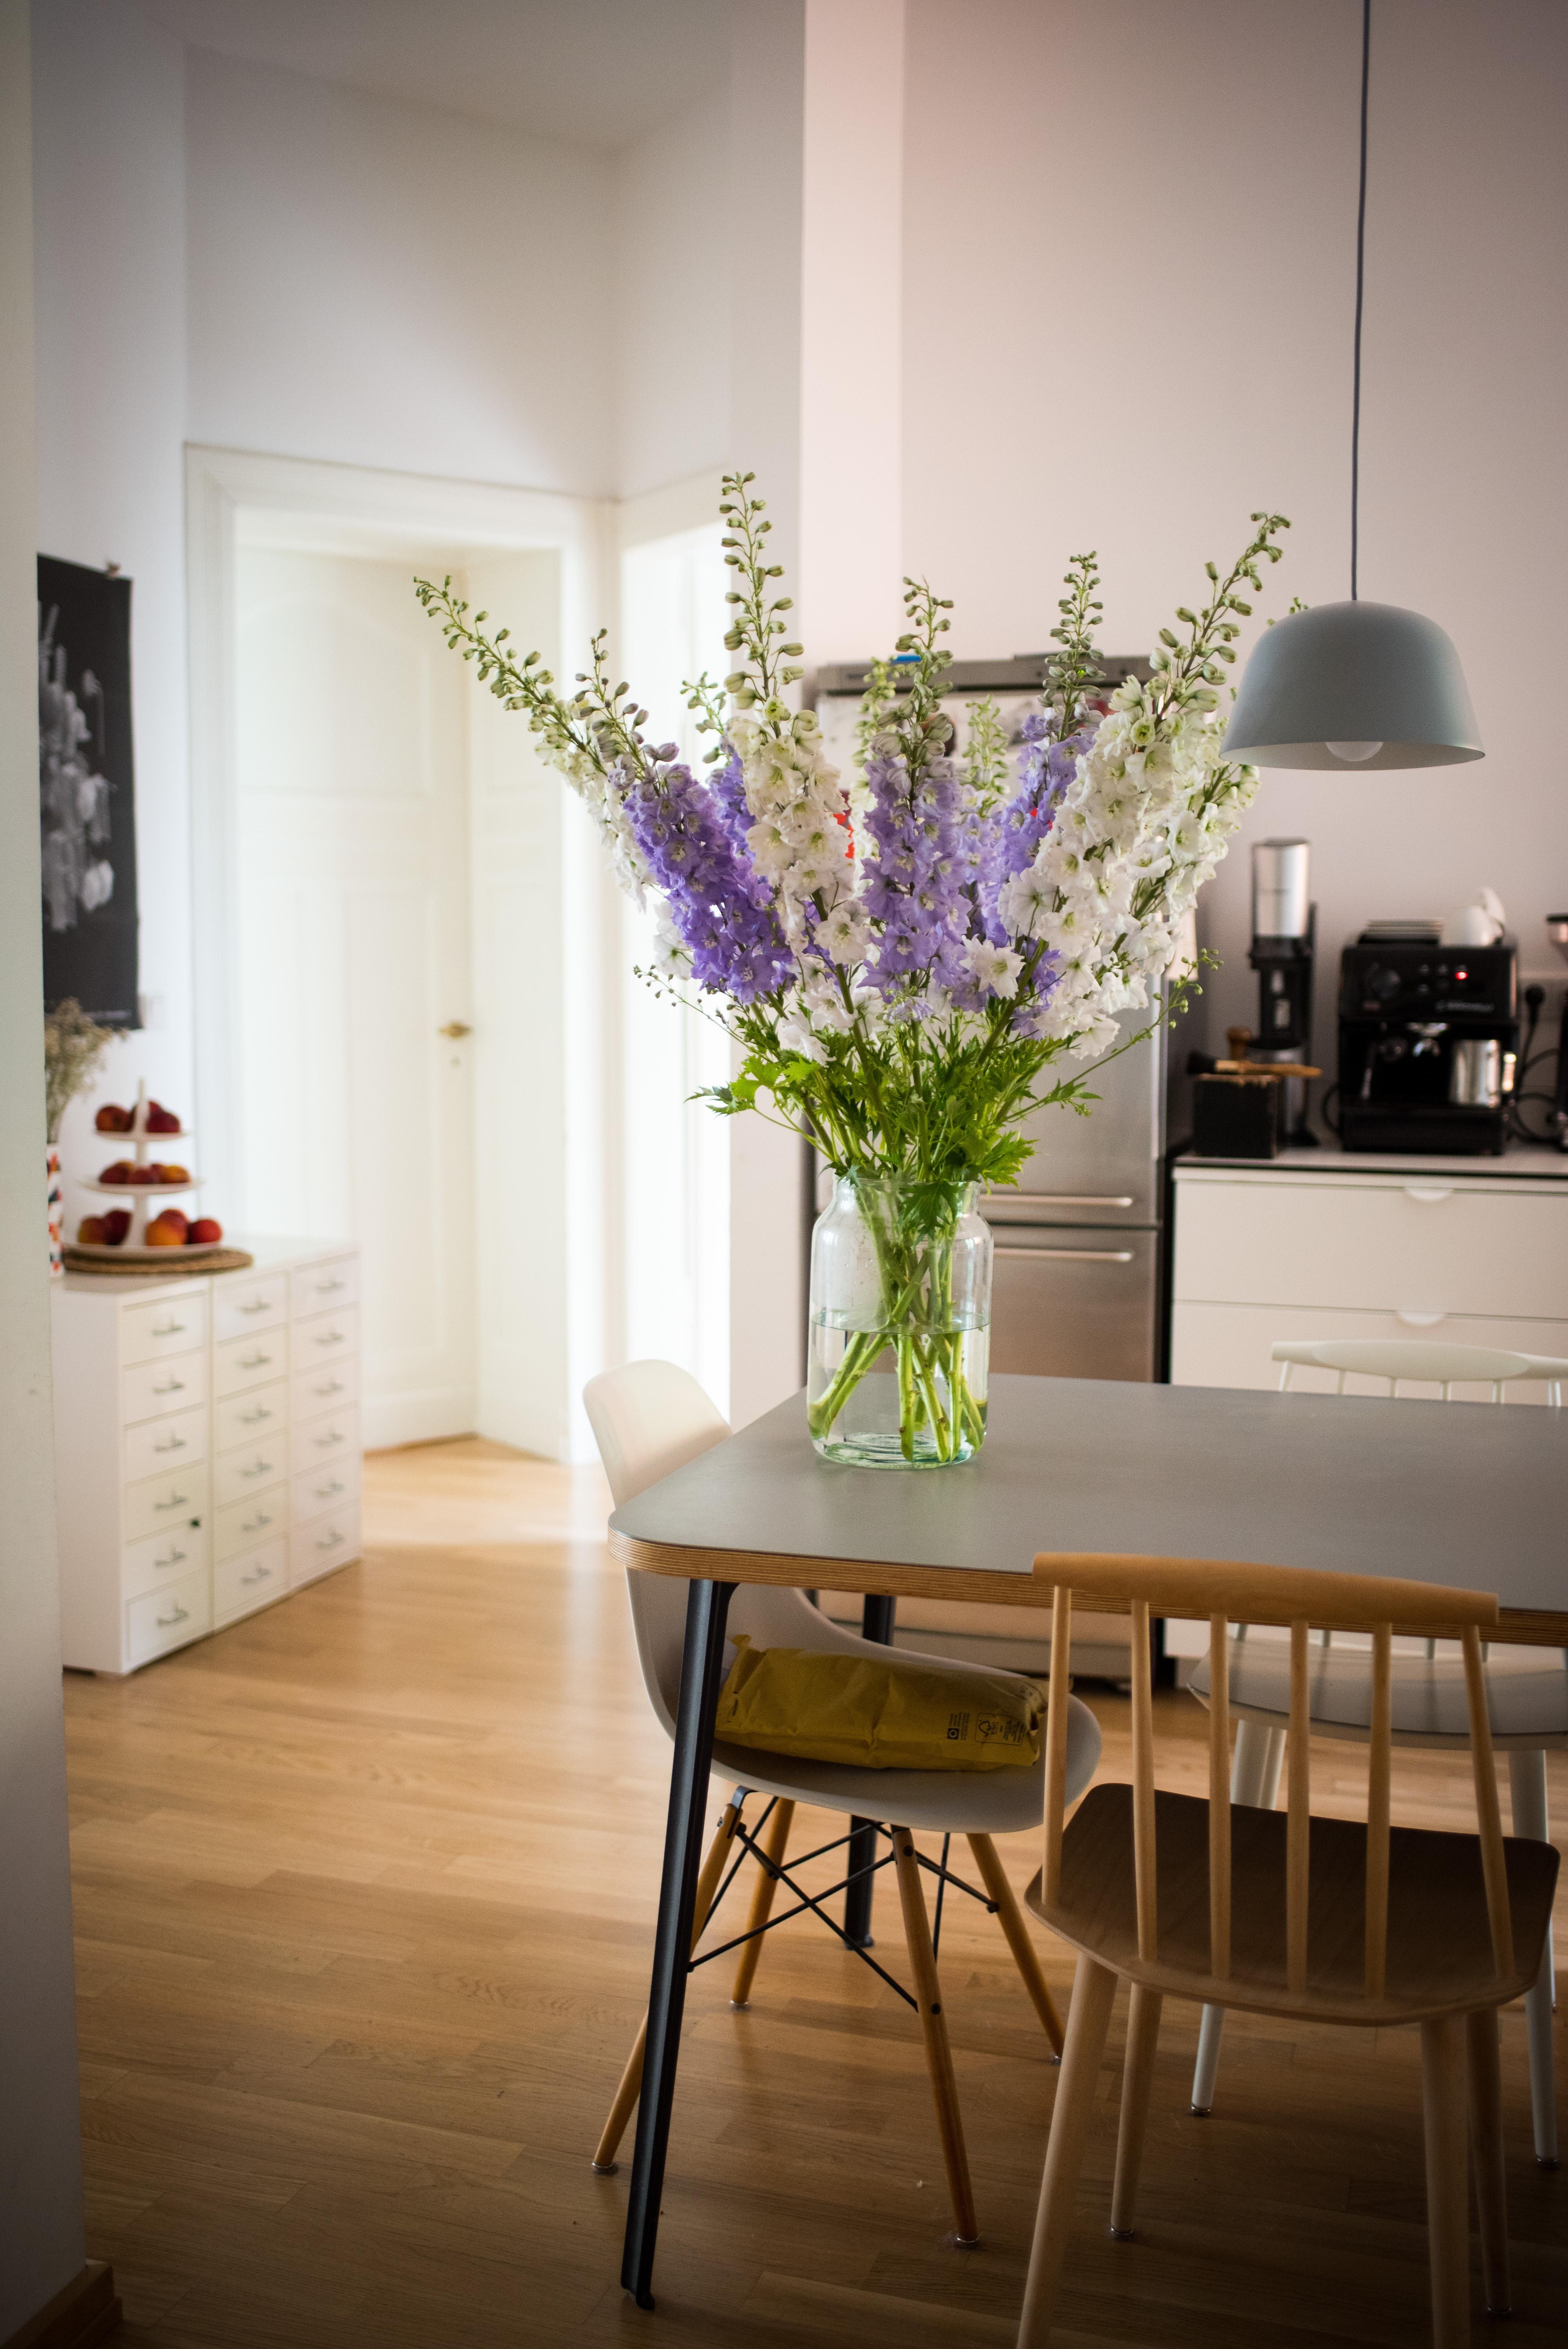 Blumige Grüße aus der Küche #kitchen #wohnküche #freshflowers #flowers #kitcheninspo #interior #interiorstyle